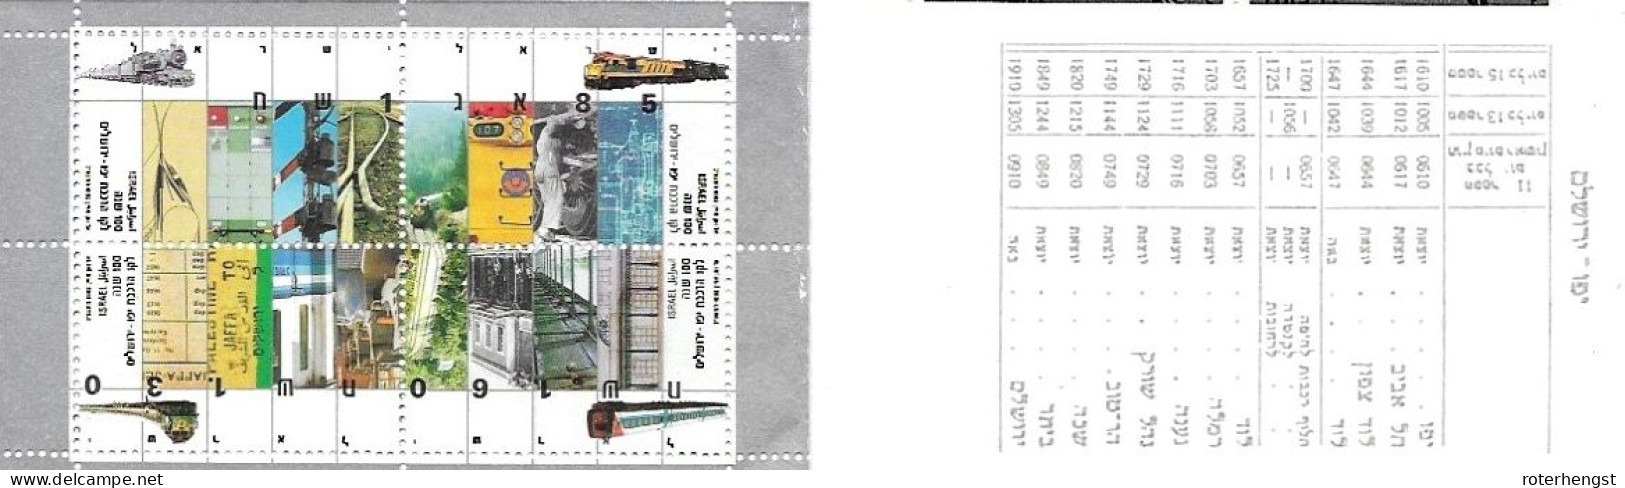 Israel Booklet Mnh ** 1992 15 Euros Train - Postzegelboekjes